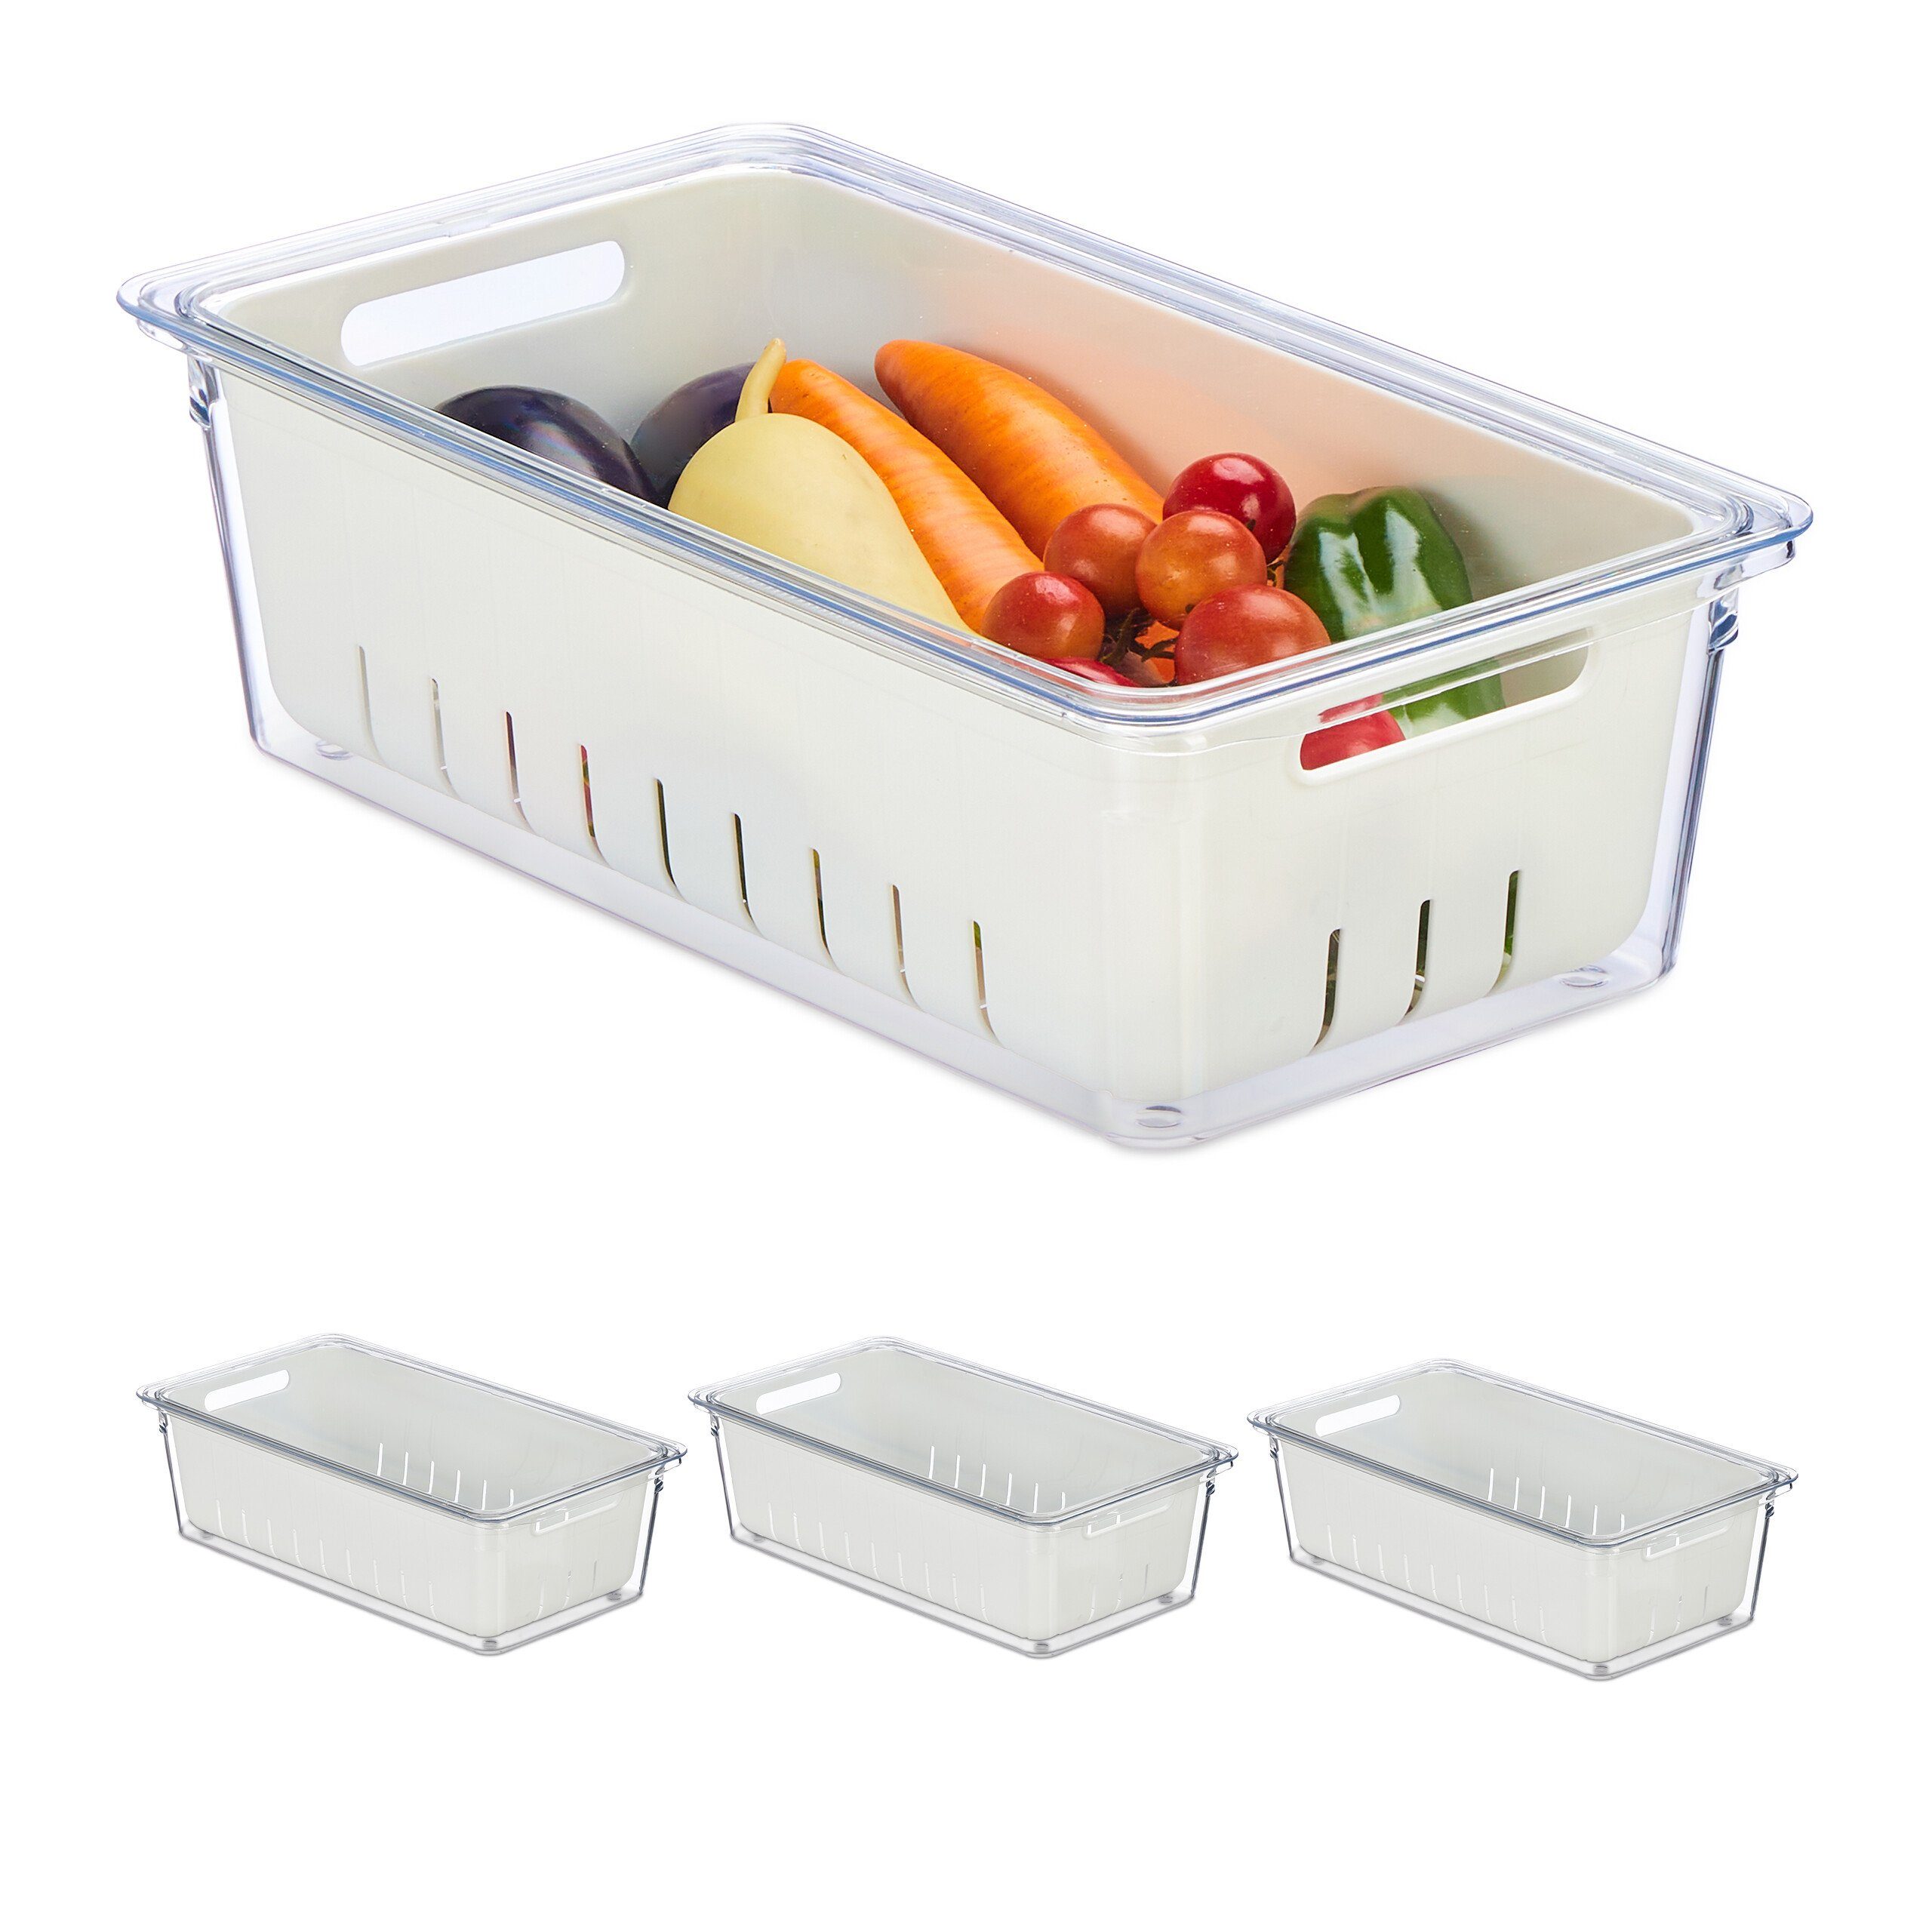 relaxdays Frischhaltedose Kühlschrank Organizer 4er Set, Kunststoff | Frischhaltedosen